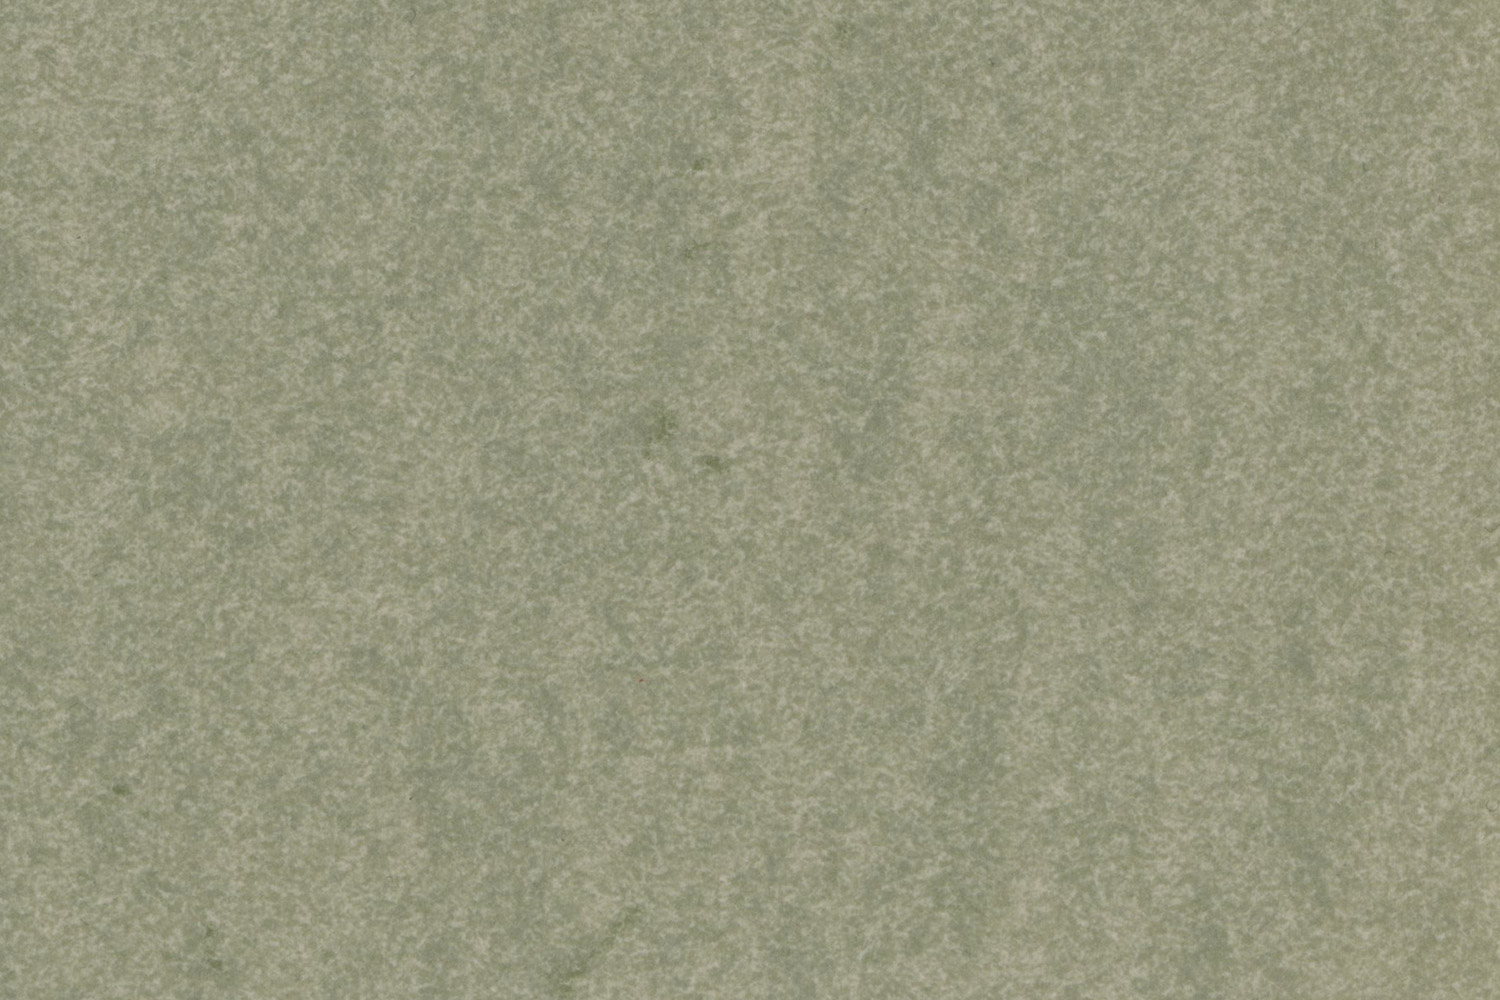 Fil Kağıdı - Light Grey (5'li paket, 110 gsm, 70x100 cm)